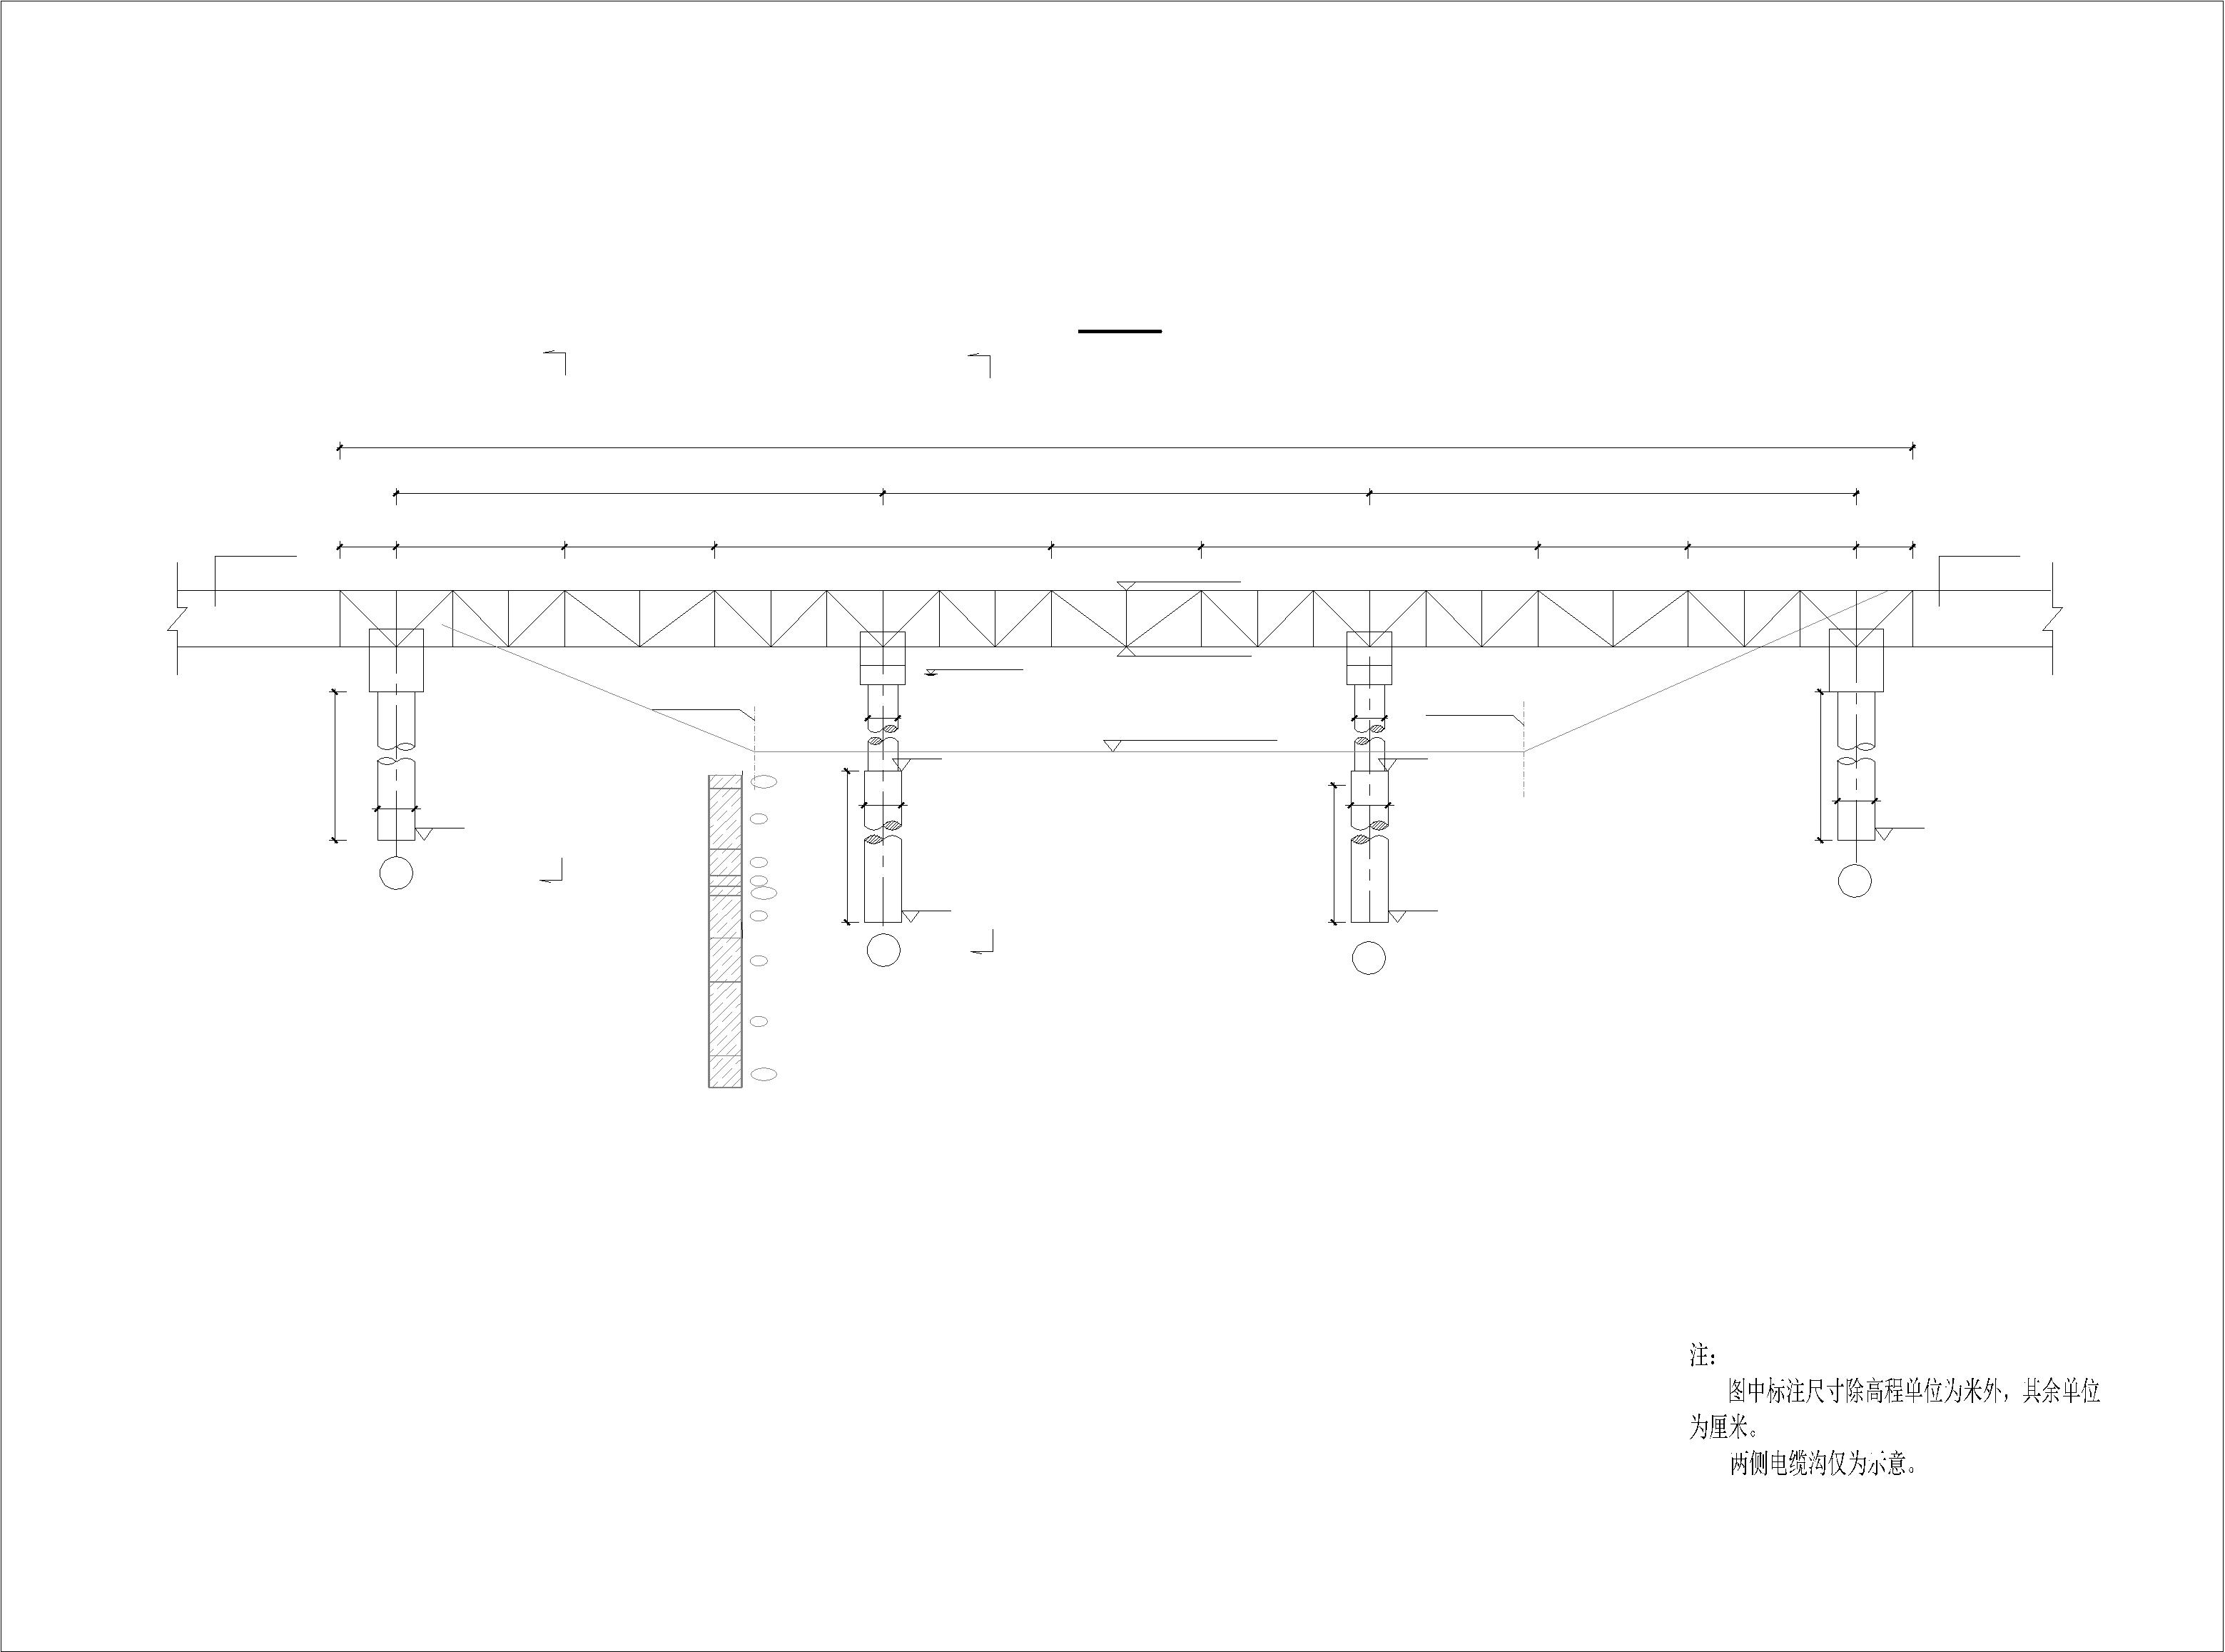 3x13电力桁架桥施工图